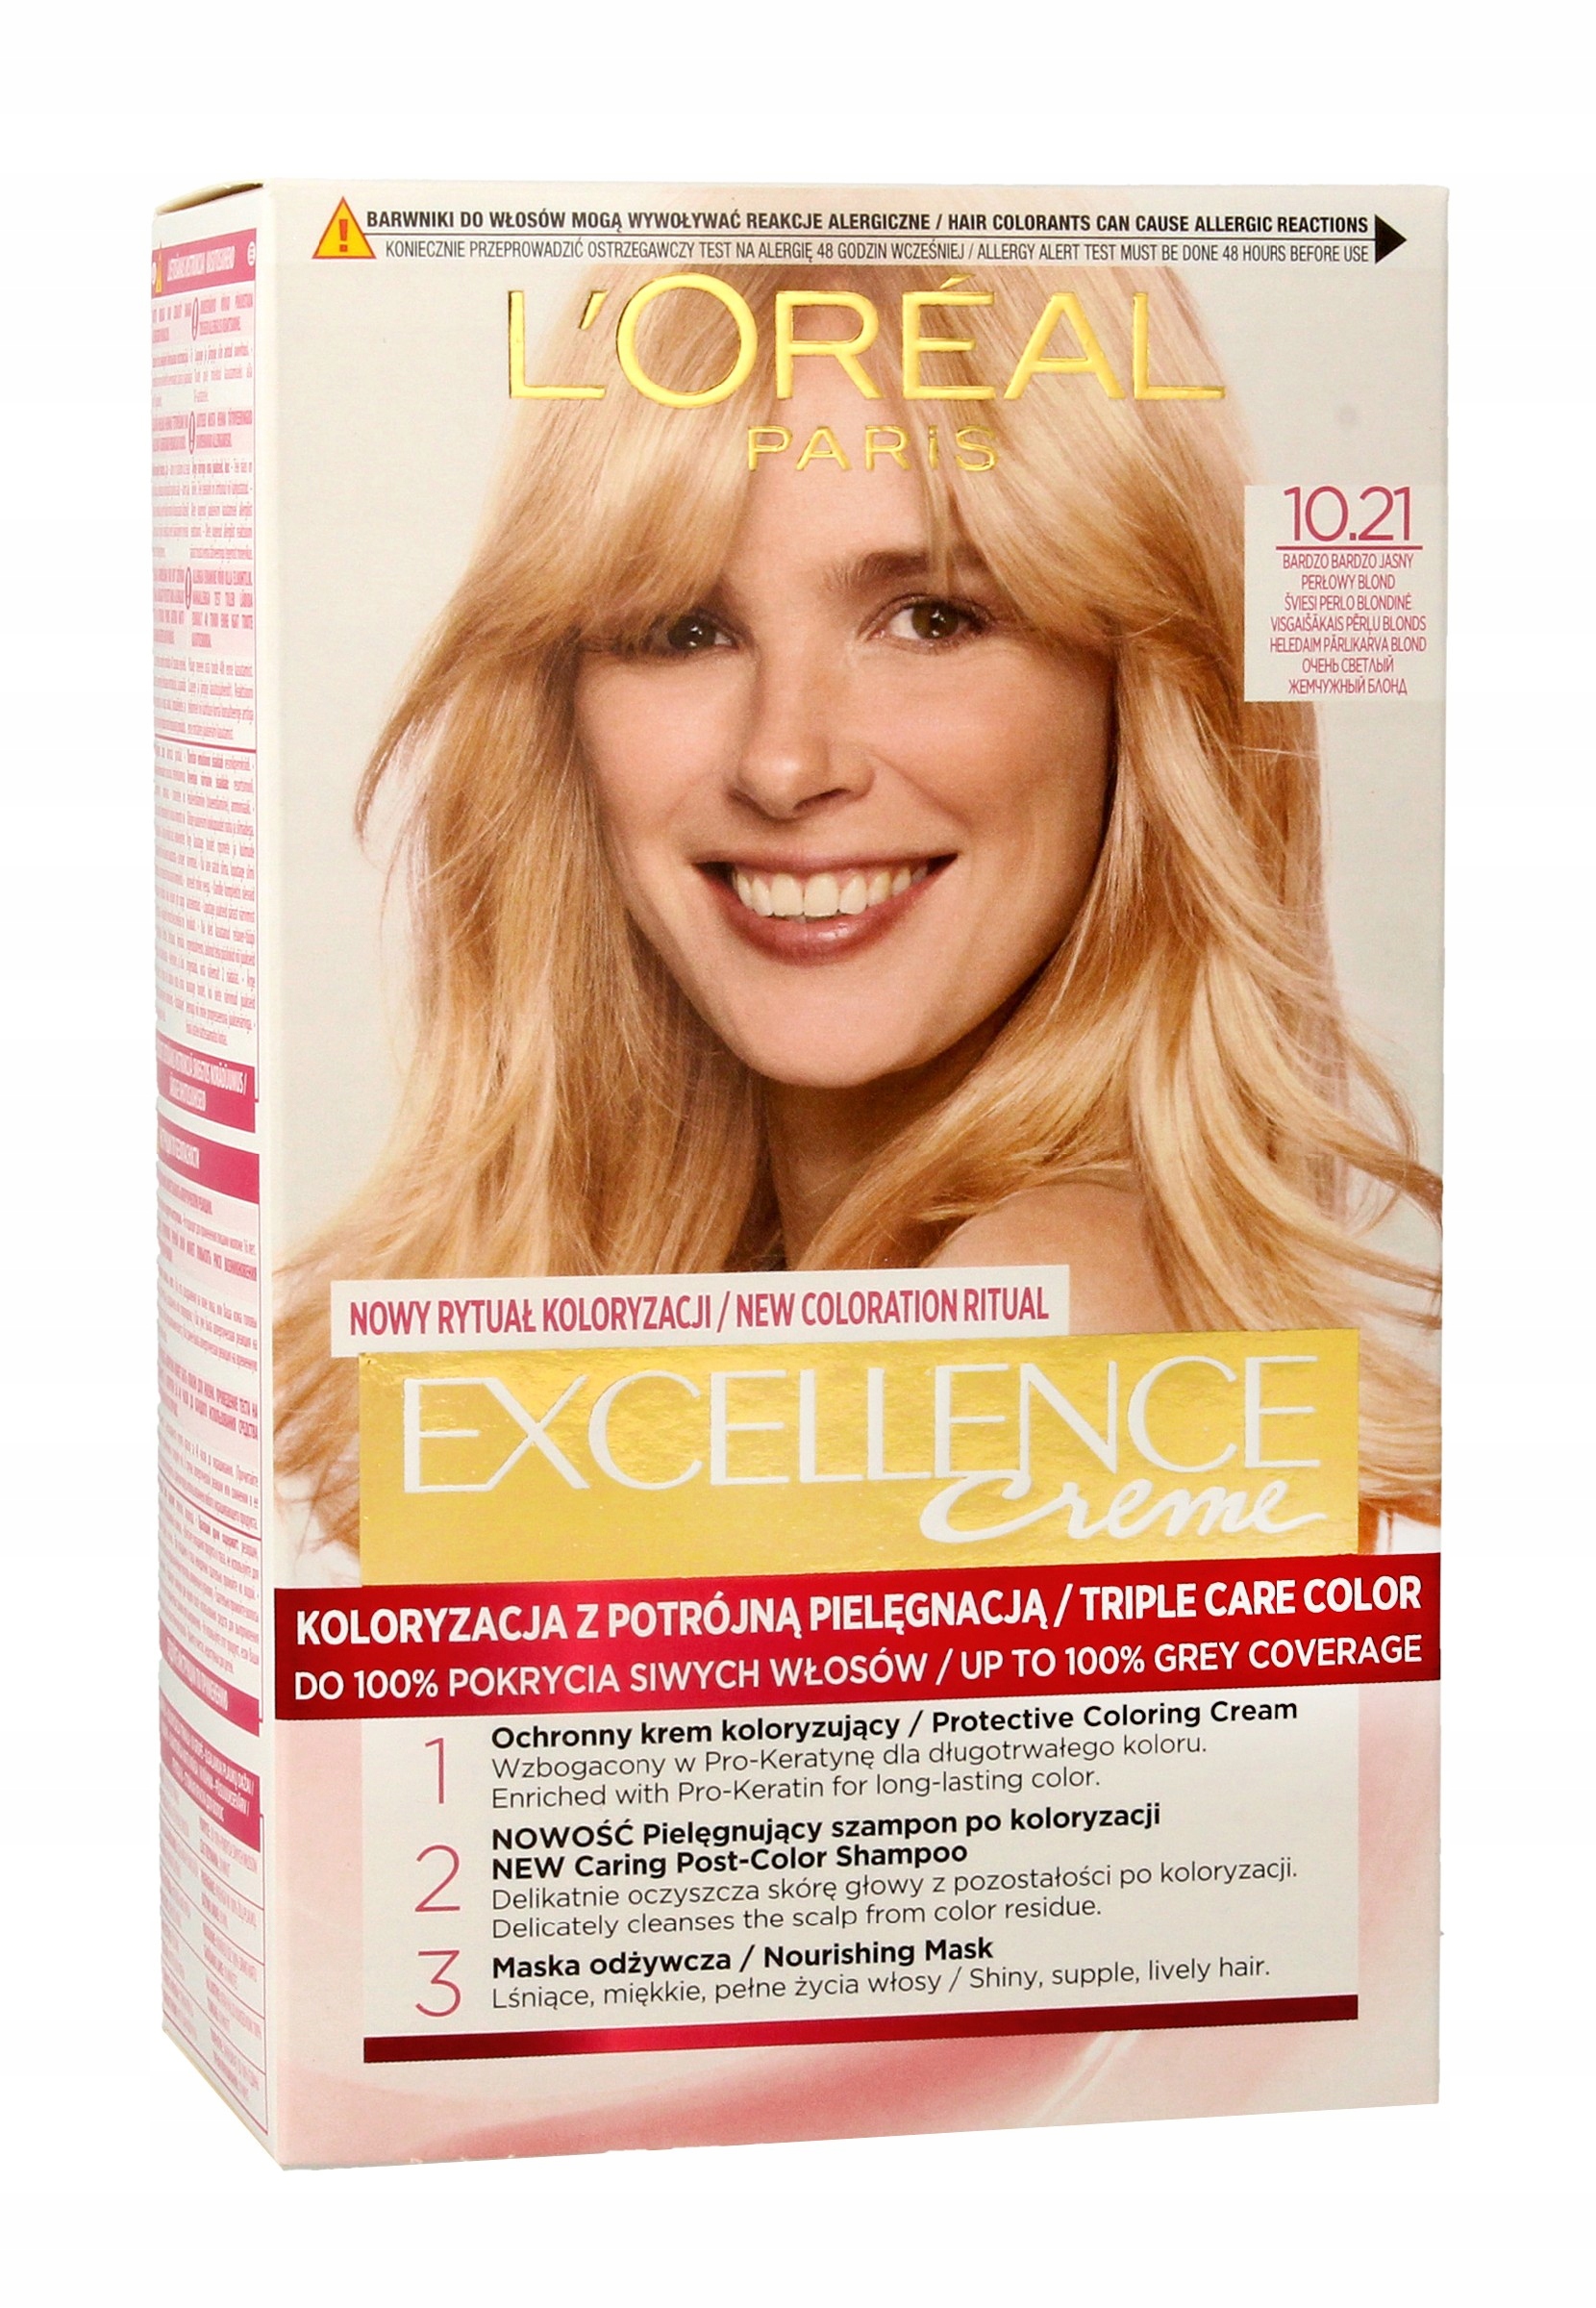 szampon koloryzujacy loreal jasny perlowy blond allegro